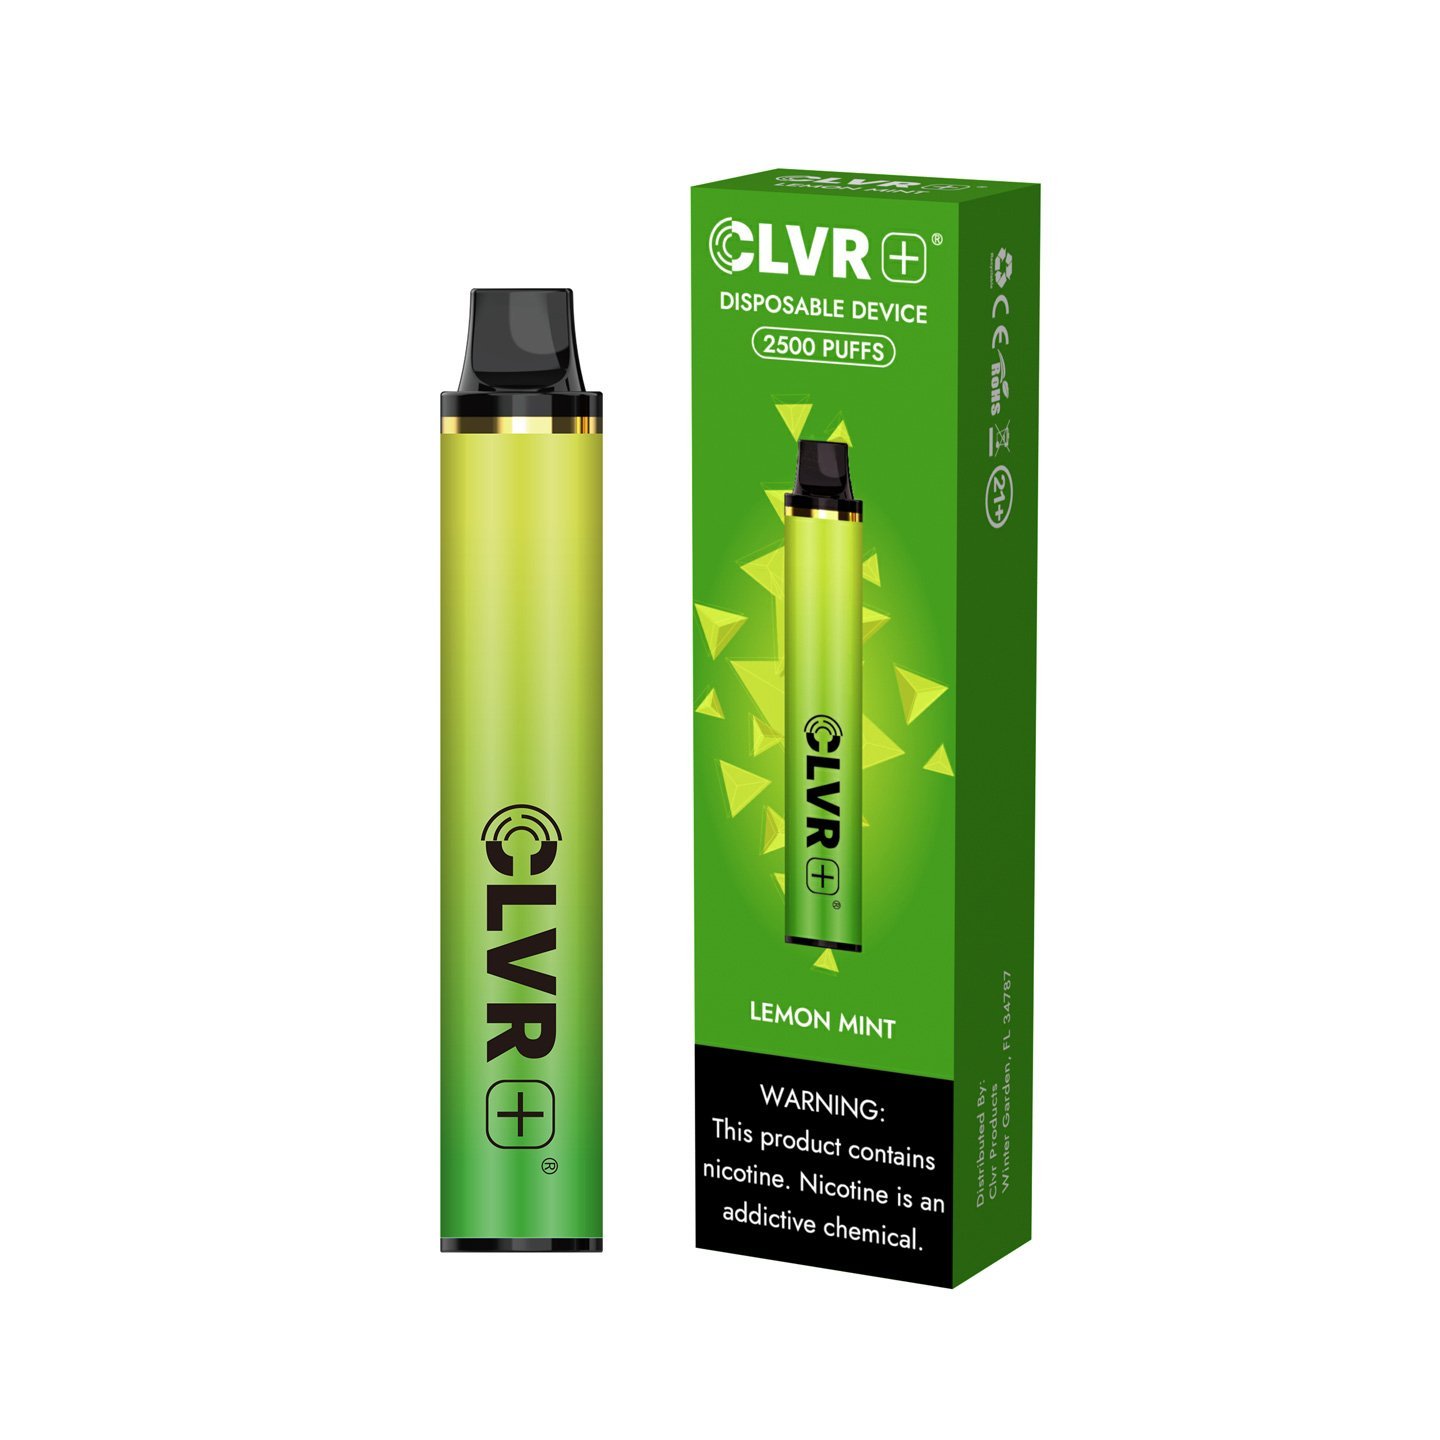 CLVRPlus Disposable Device (Lemon Mint- 2500 Puffs)